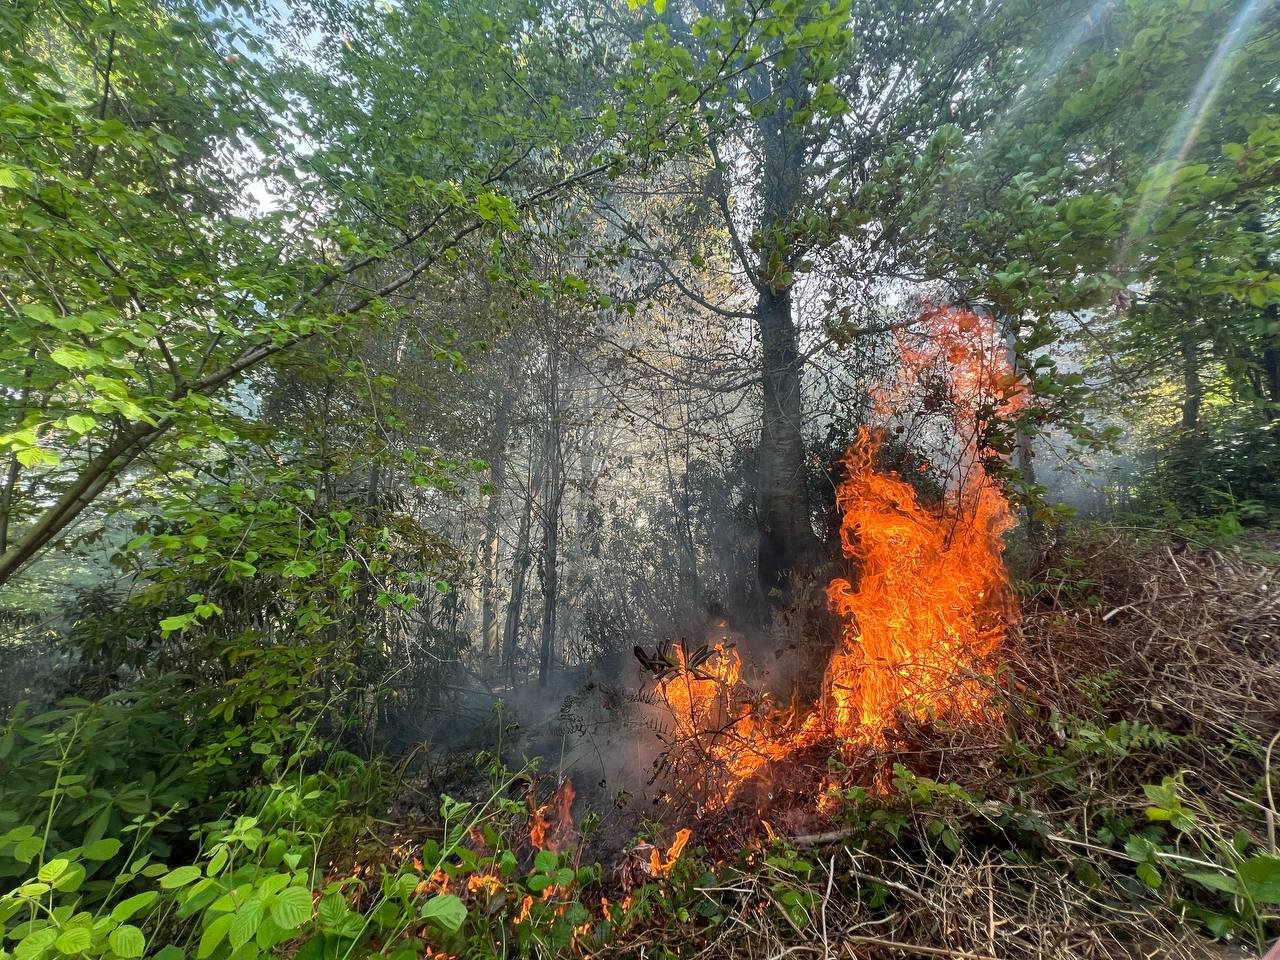 Sakarya'da Bahçe Temizliği İçin Yakılan Ateş Ormana Sıçradı